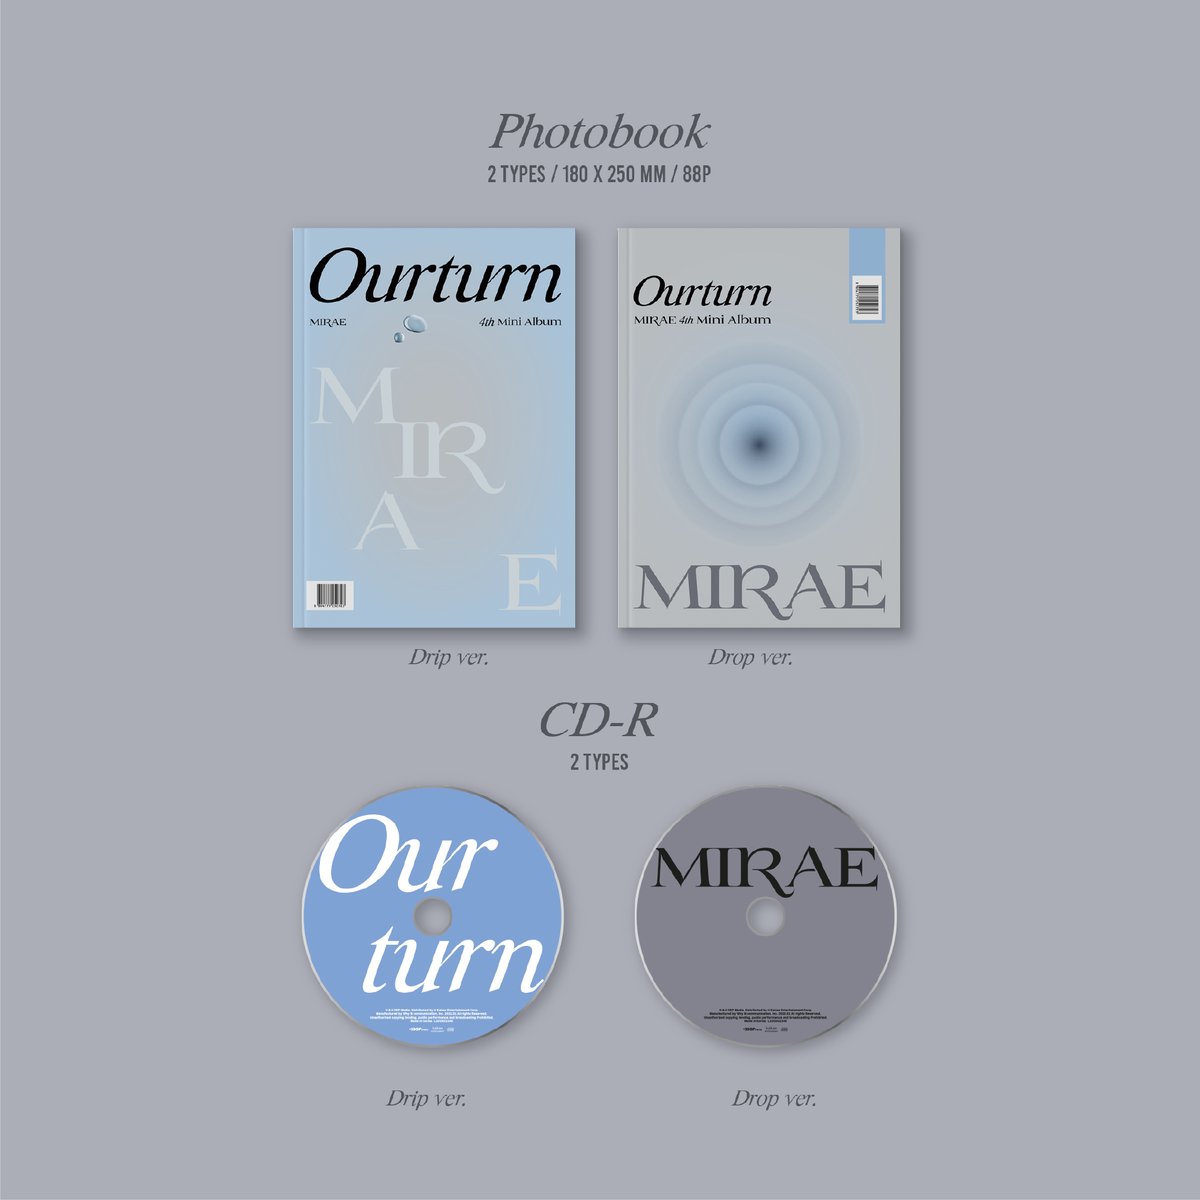 メンバー全員サイン会応募対象】MIRAE 4th Mini Album [Ourturn]